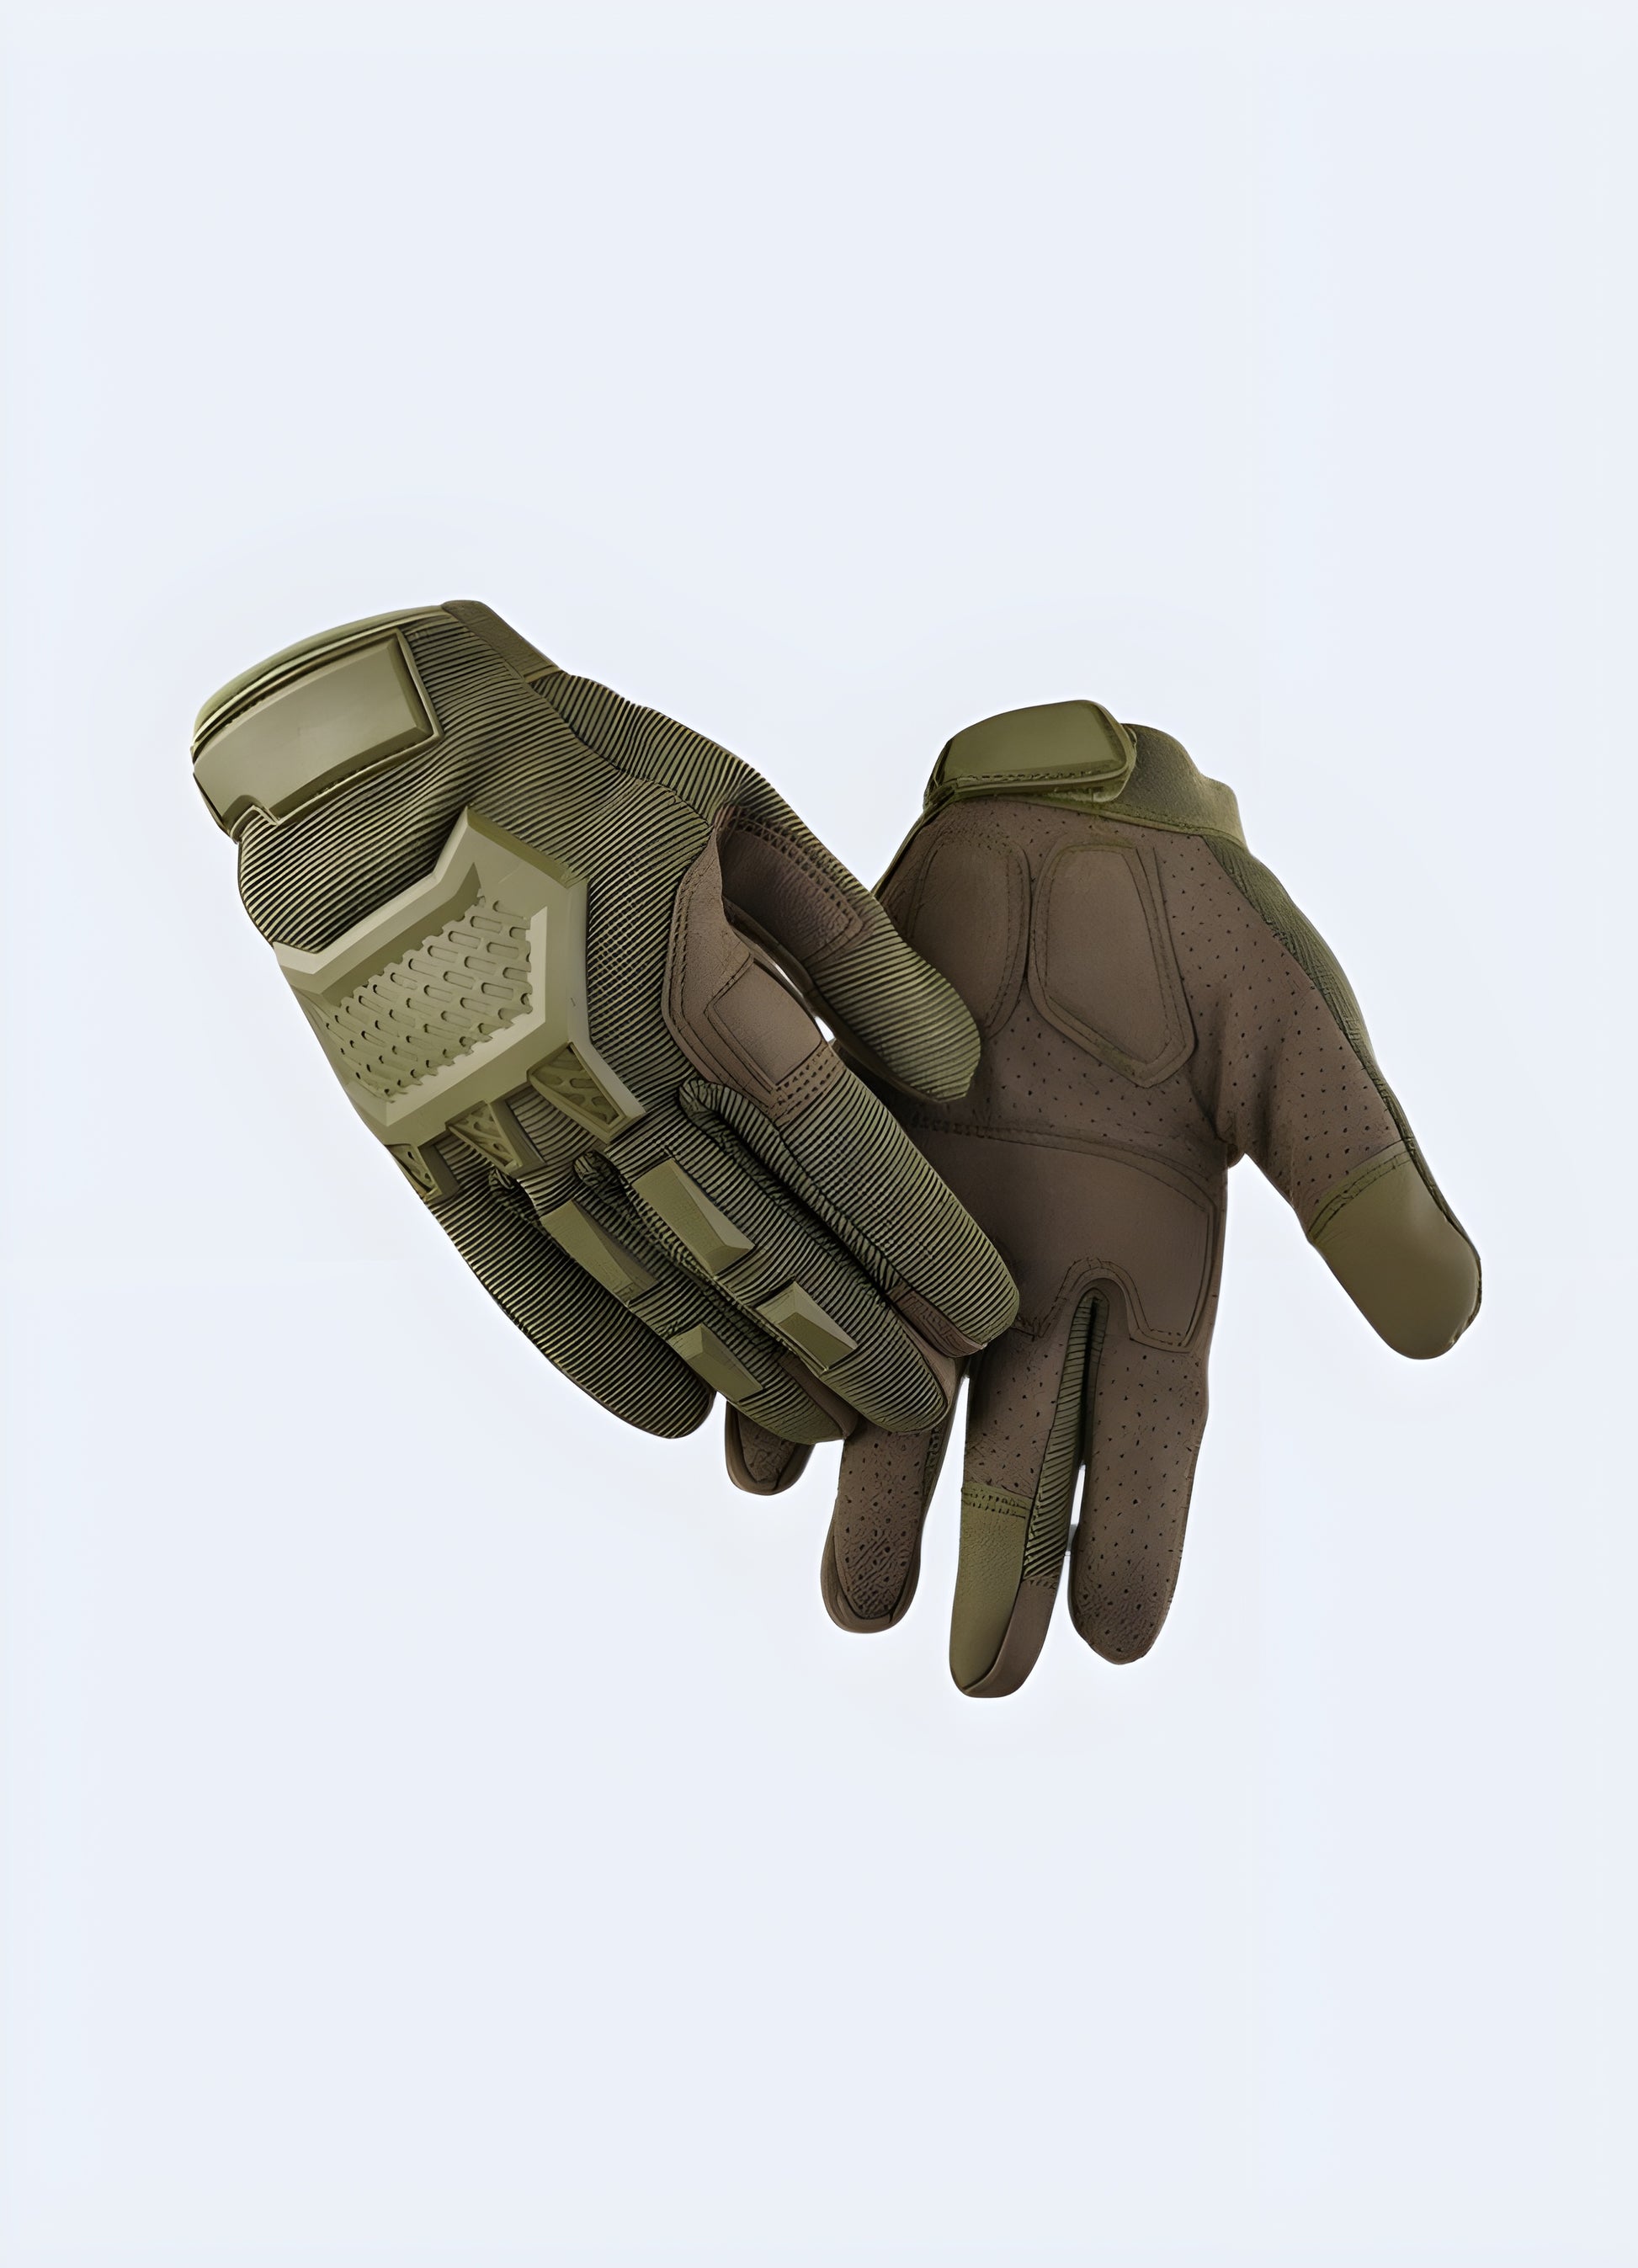 Gloves techwear side view full finger khaki.